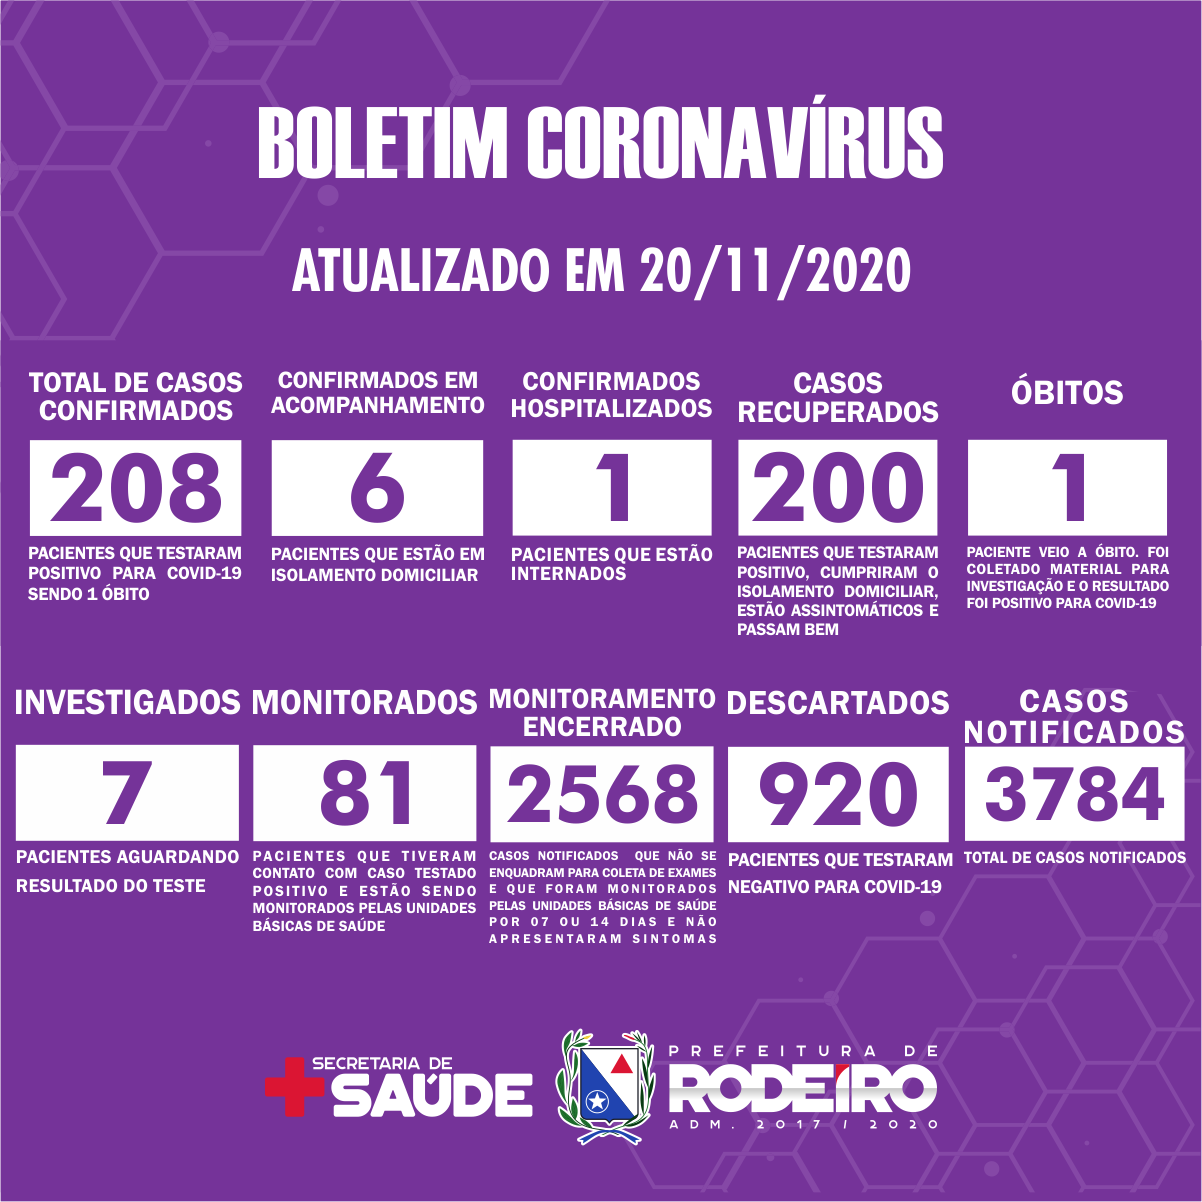 Boletim Epidemiológico do Município de Rodeiro sobre coronavírus, atualizado em 20/11/2020